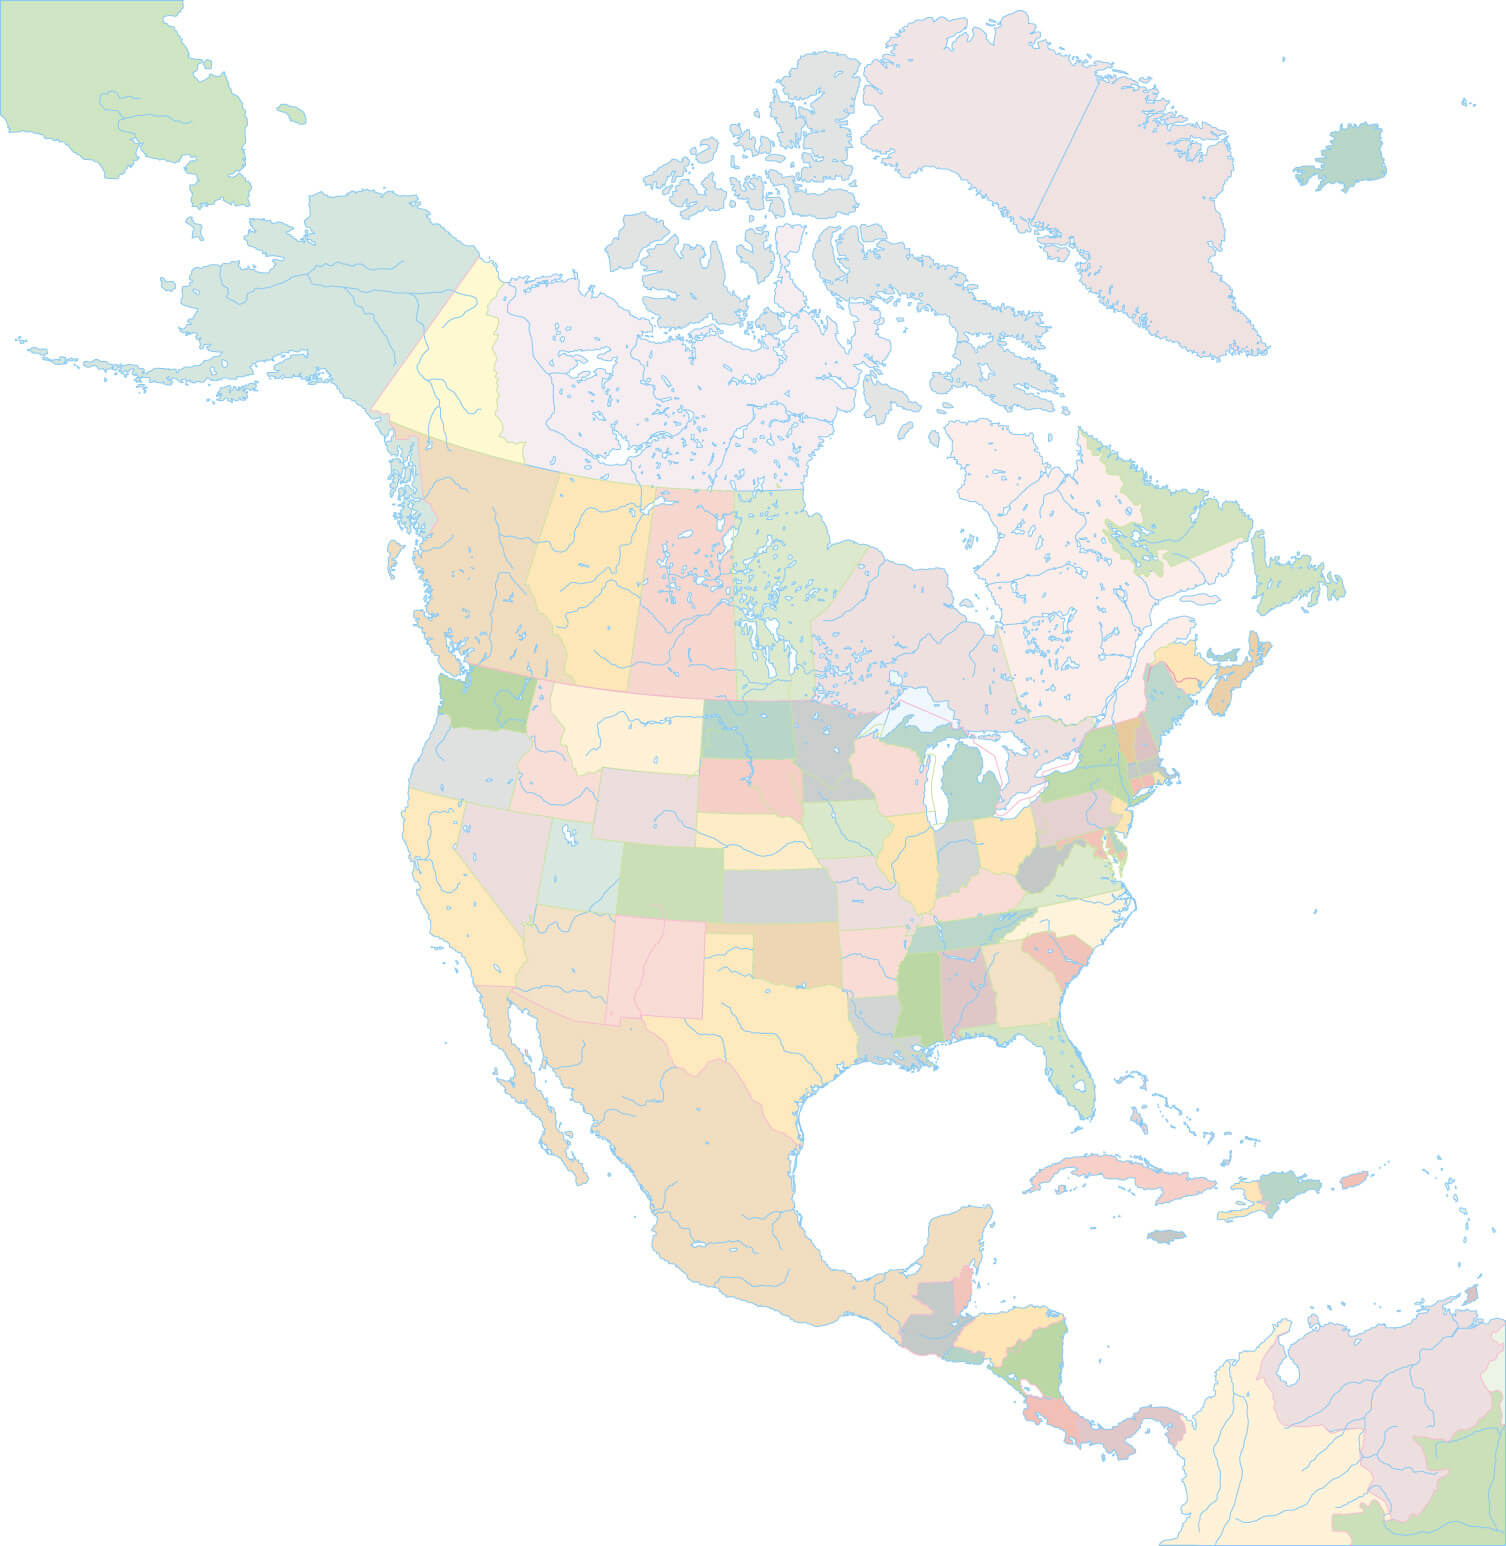 farbe leer karte von nordlich amerika.